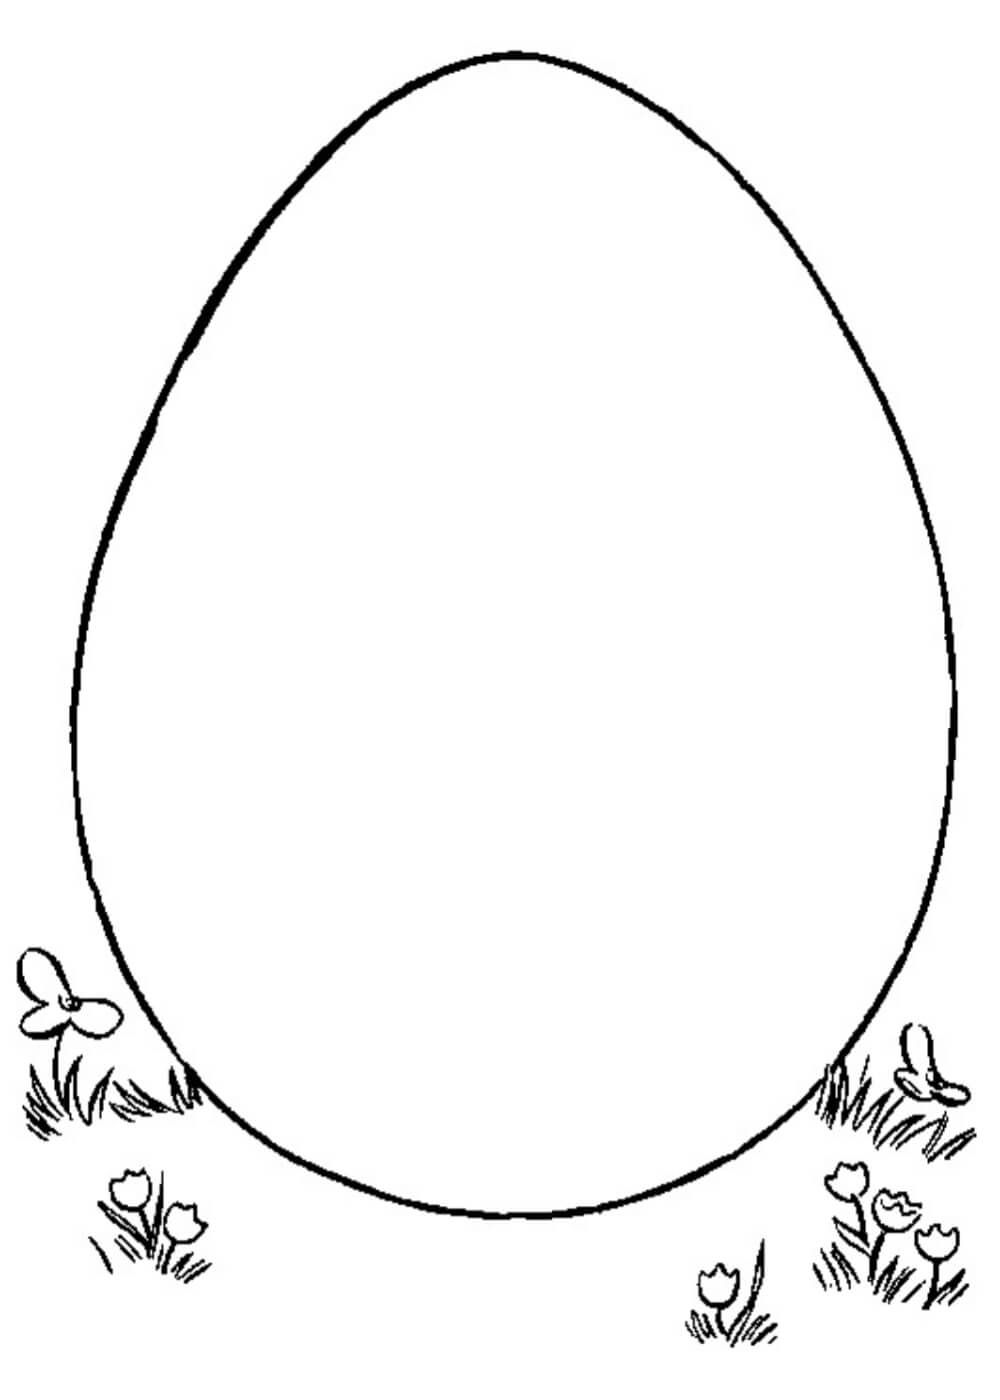 Яйцо шаблон для детей. Яйцо раскраска. Яйцо раскраска для детей. Пасхальное яйцо раскраска для детей. Яйца для раскрашивания детям.